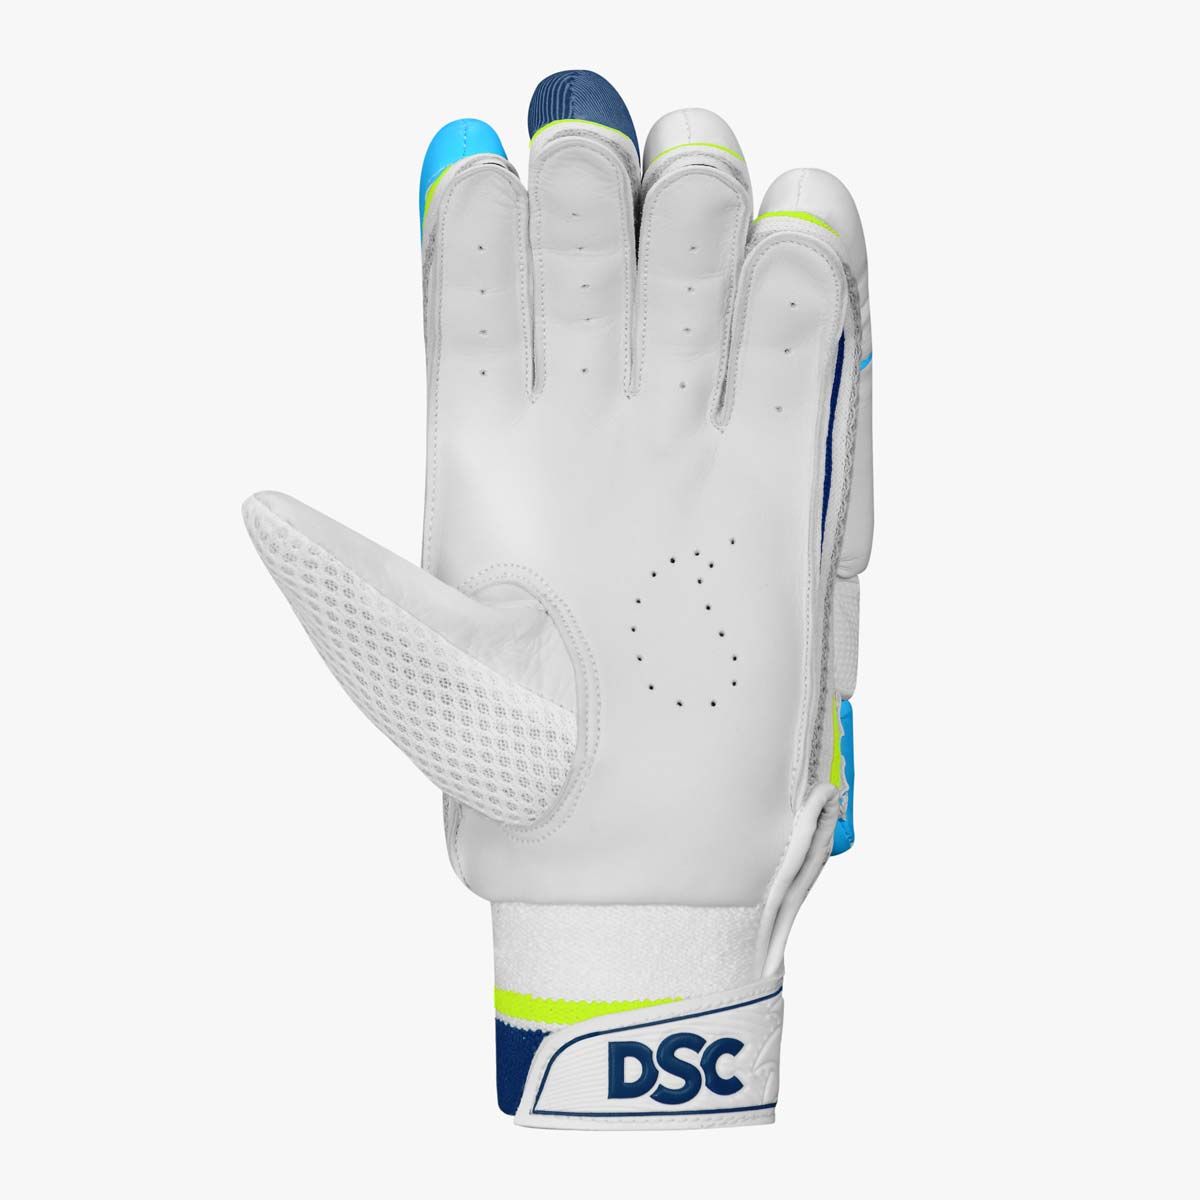 DSC Condor Rave Batting Gloves Adult